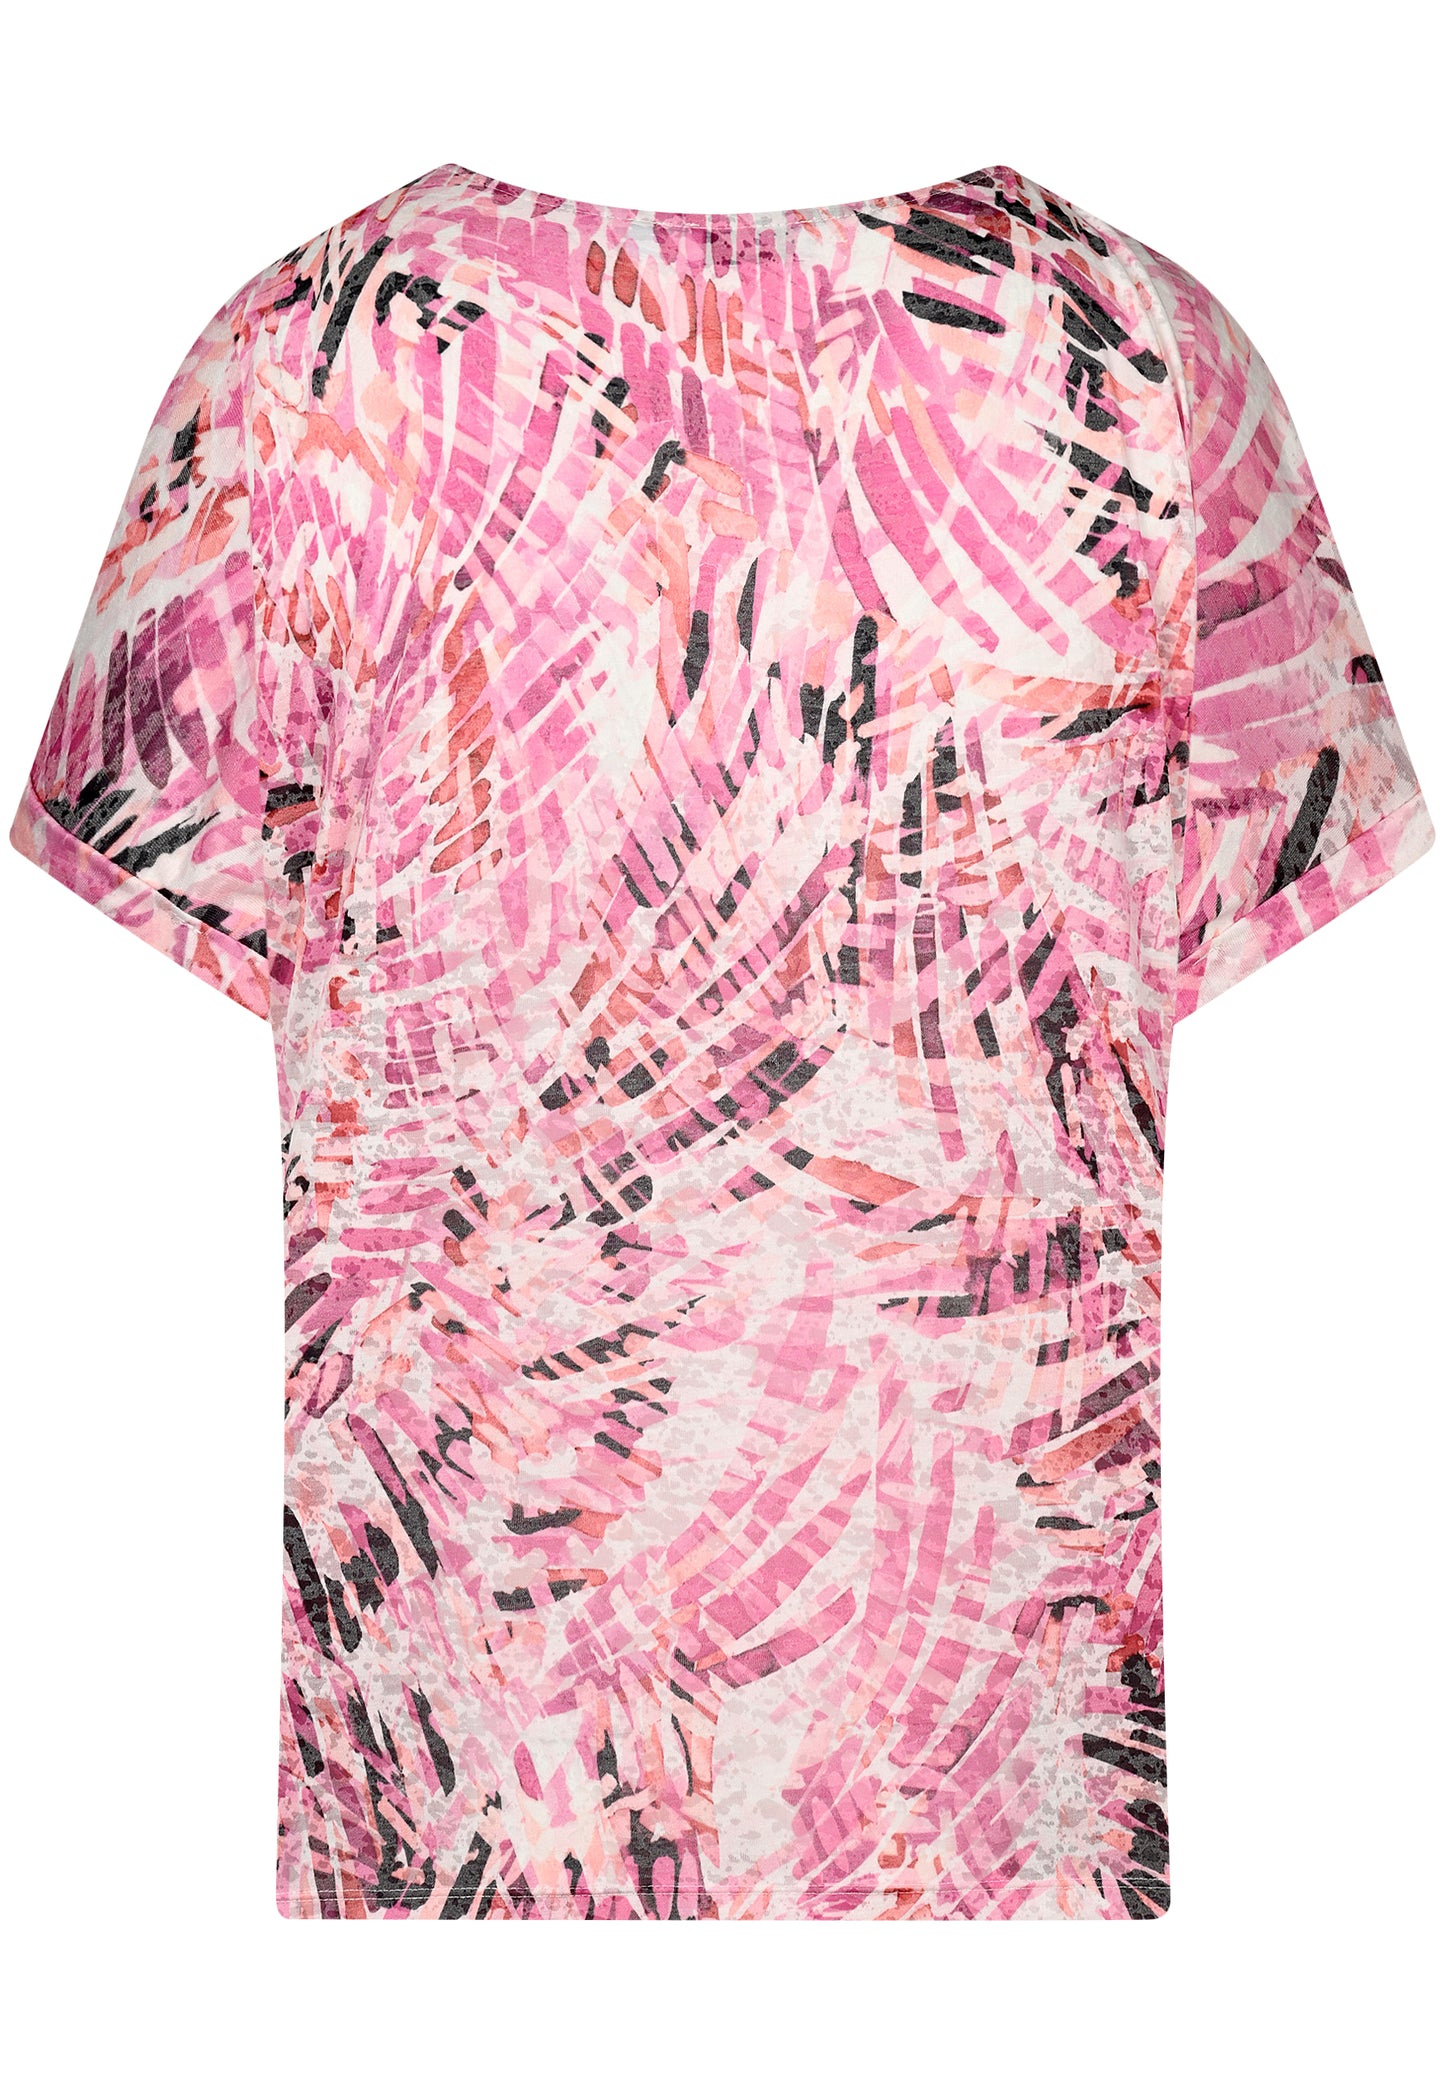 E24288 Shirt Burnout - 09/pink-white